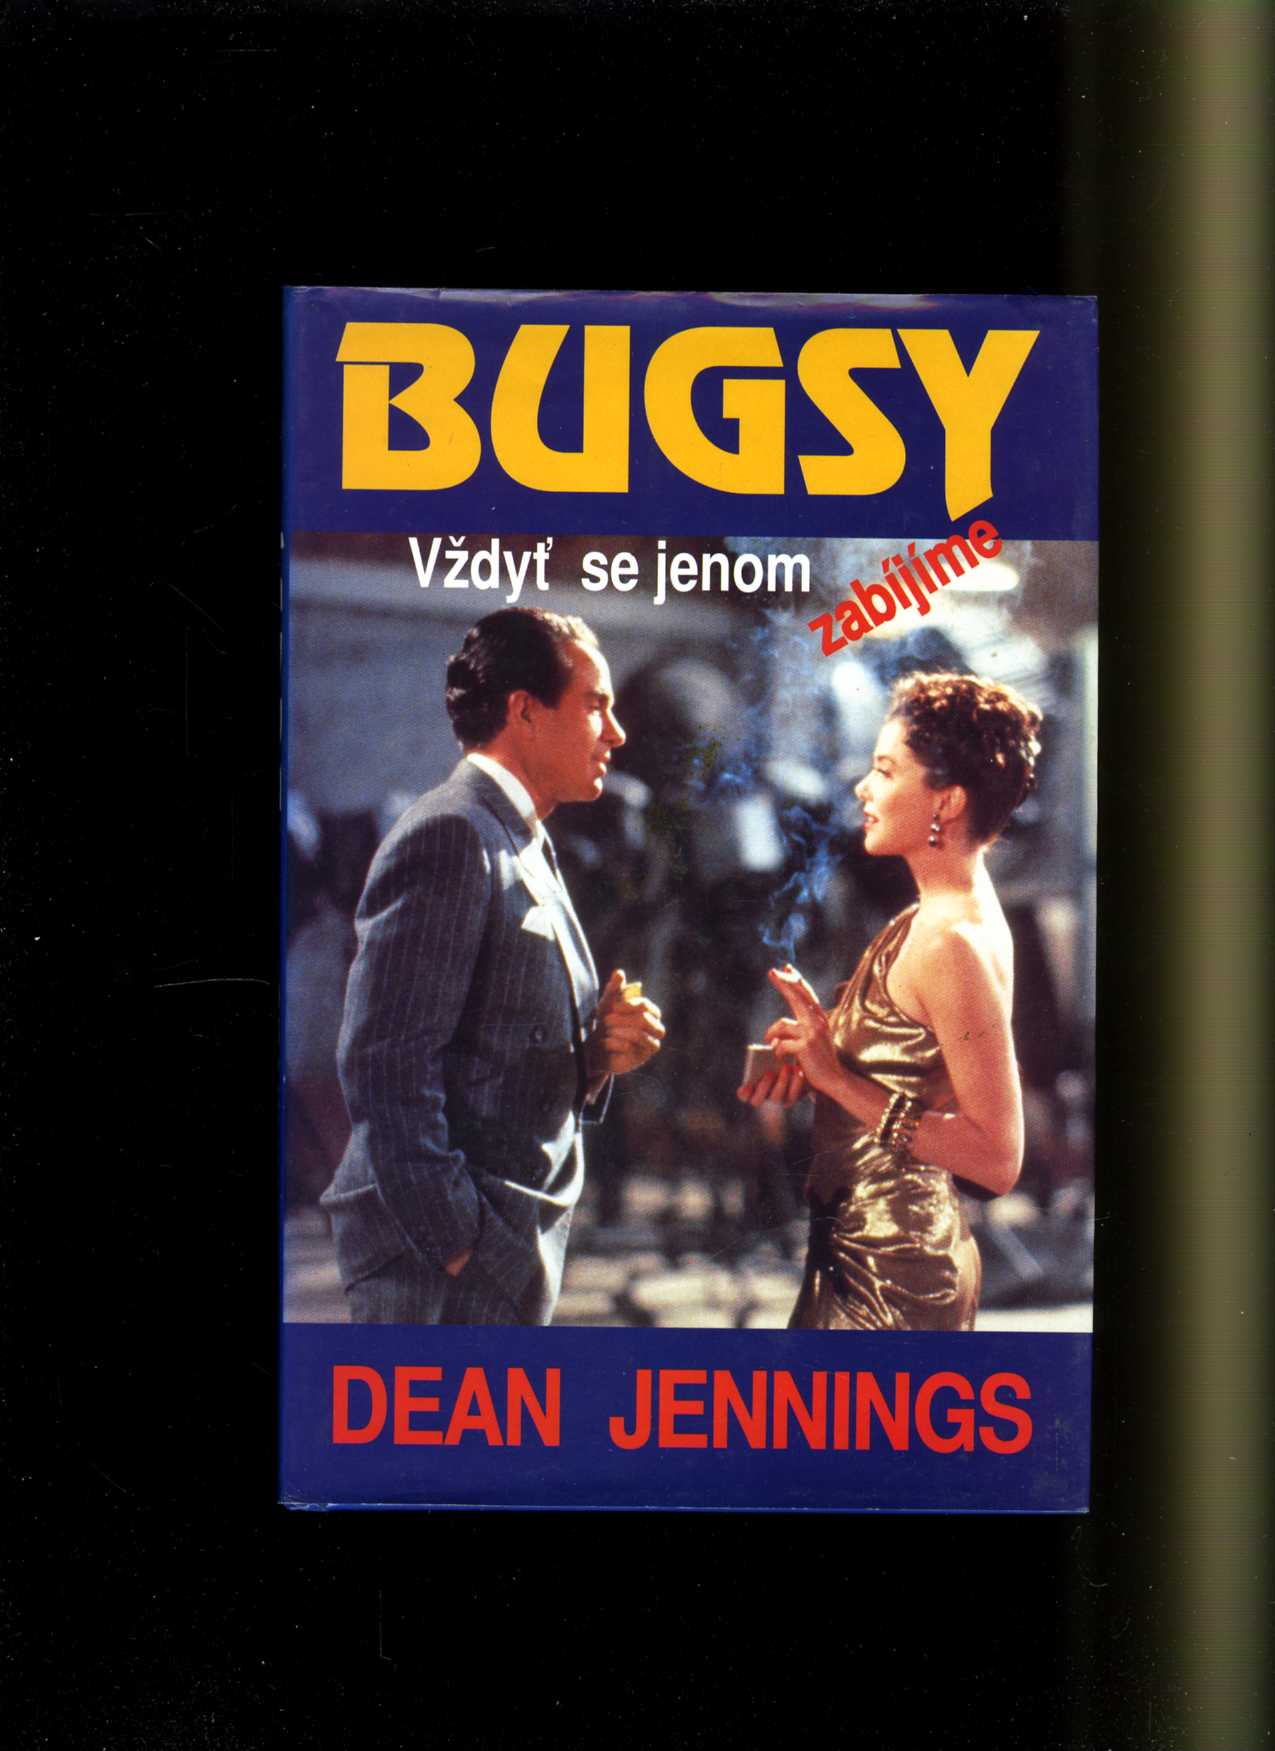 Bugsy - Vždyť se jenom zabíjíme (Dean Jennings)